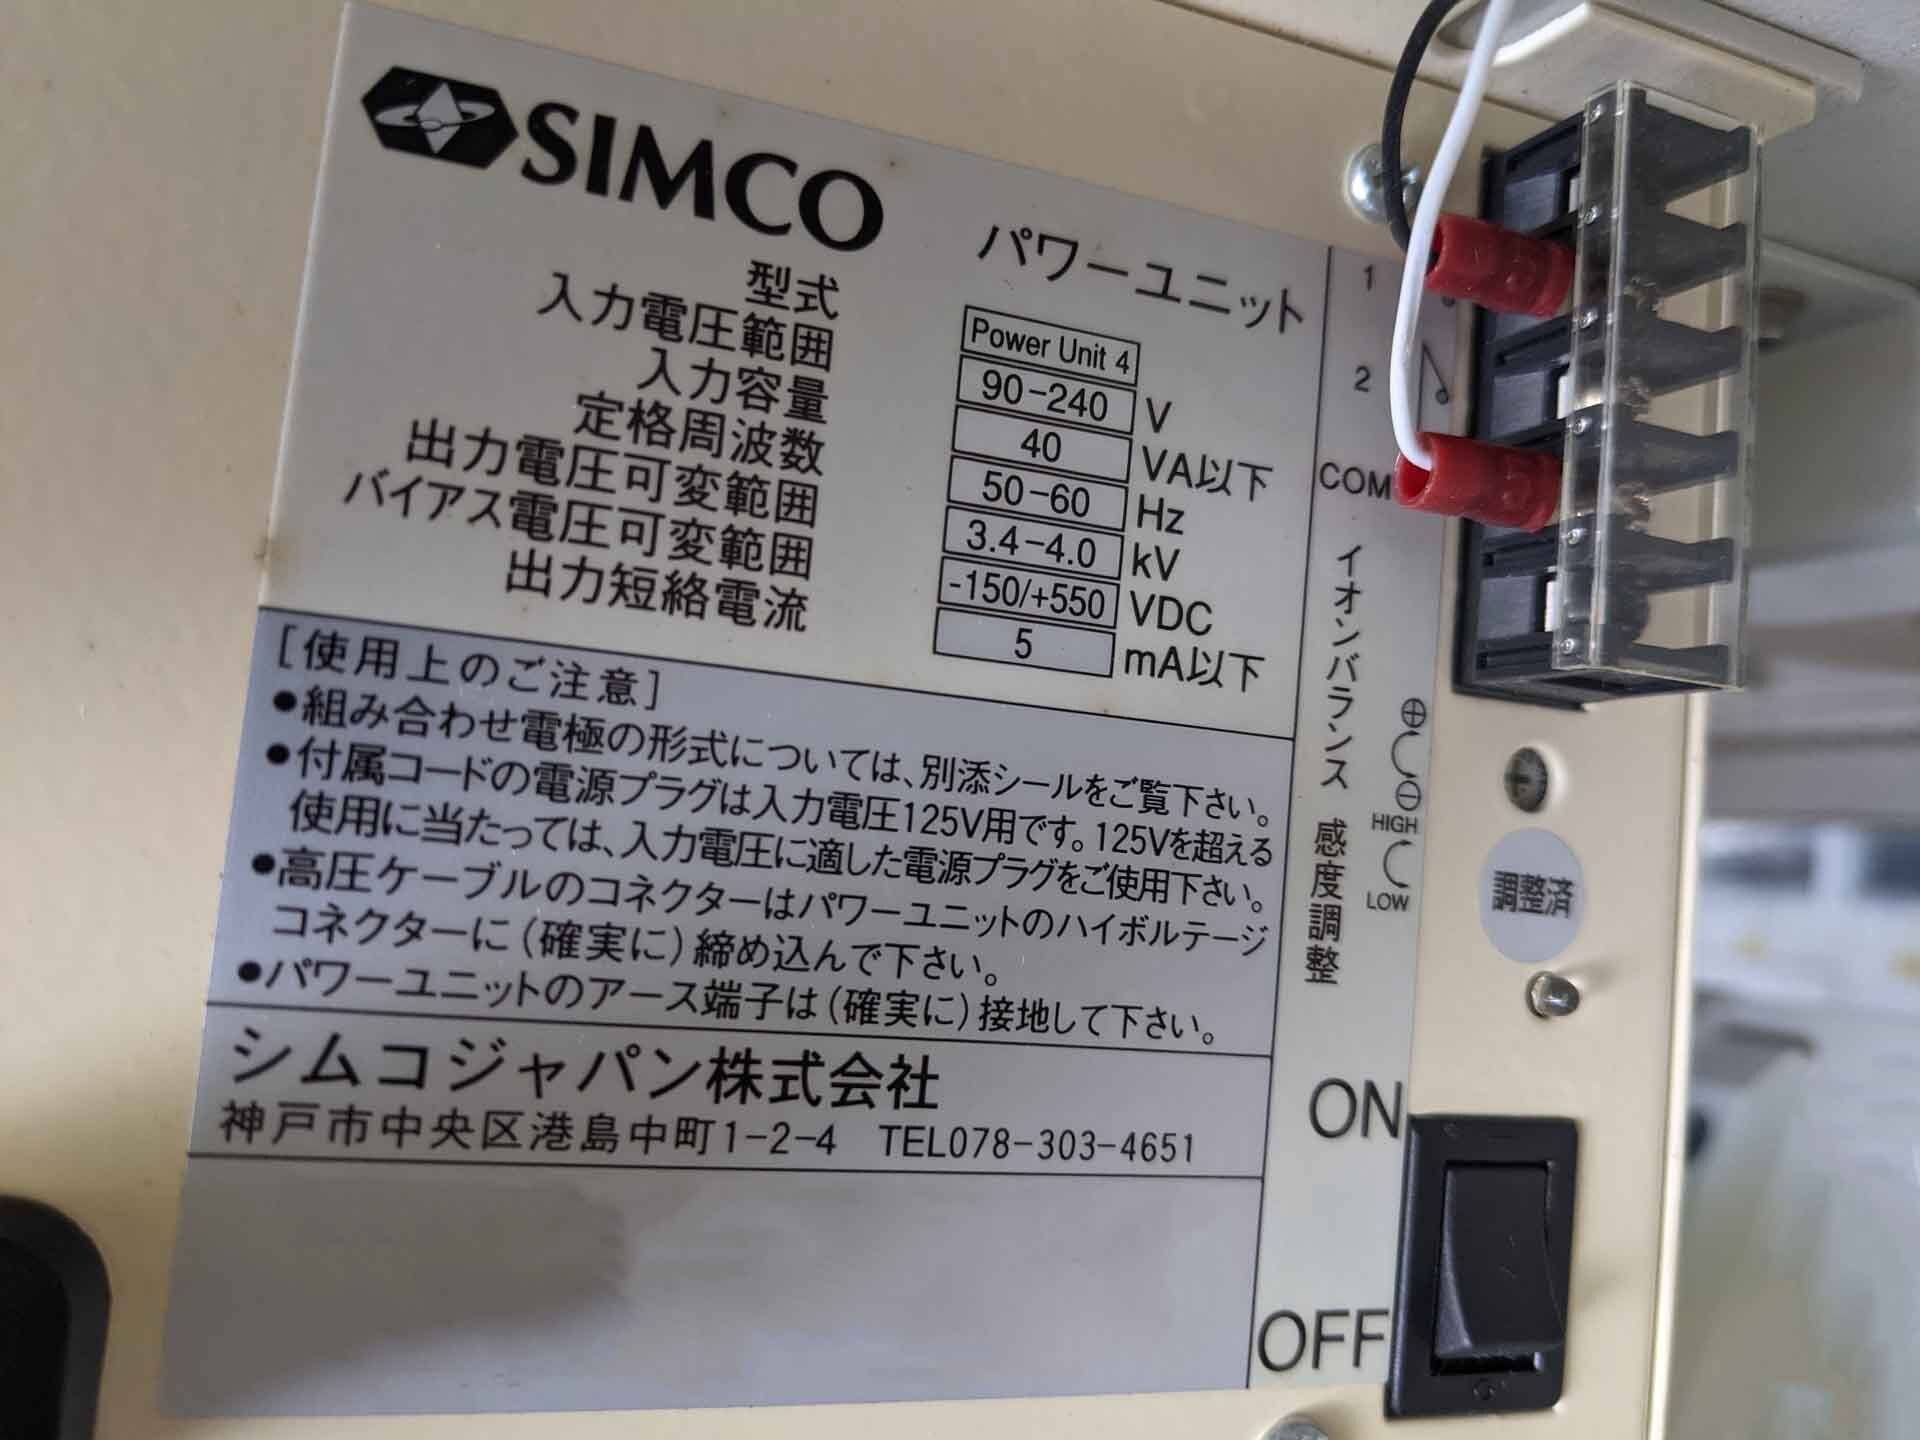 图为 已使用的 SIMCO Power Unit 7 待售